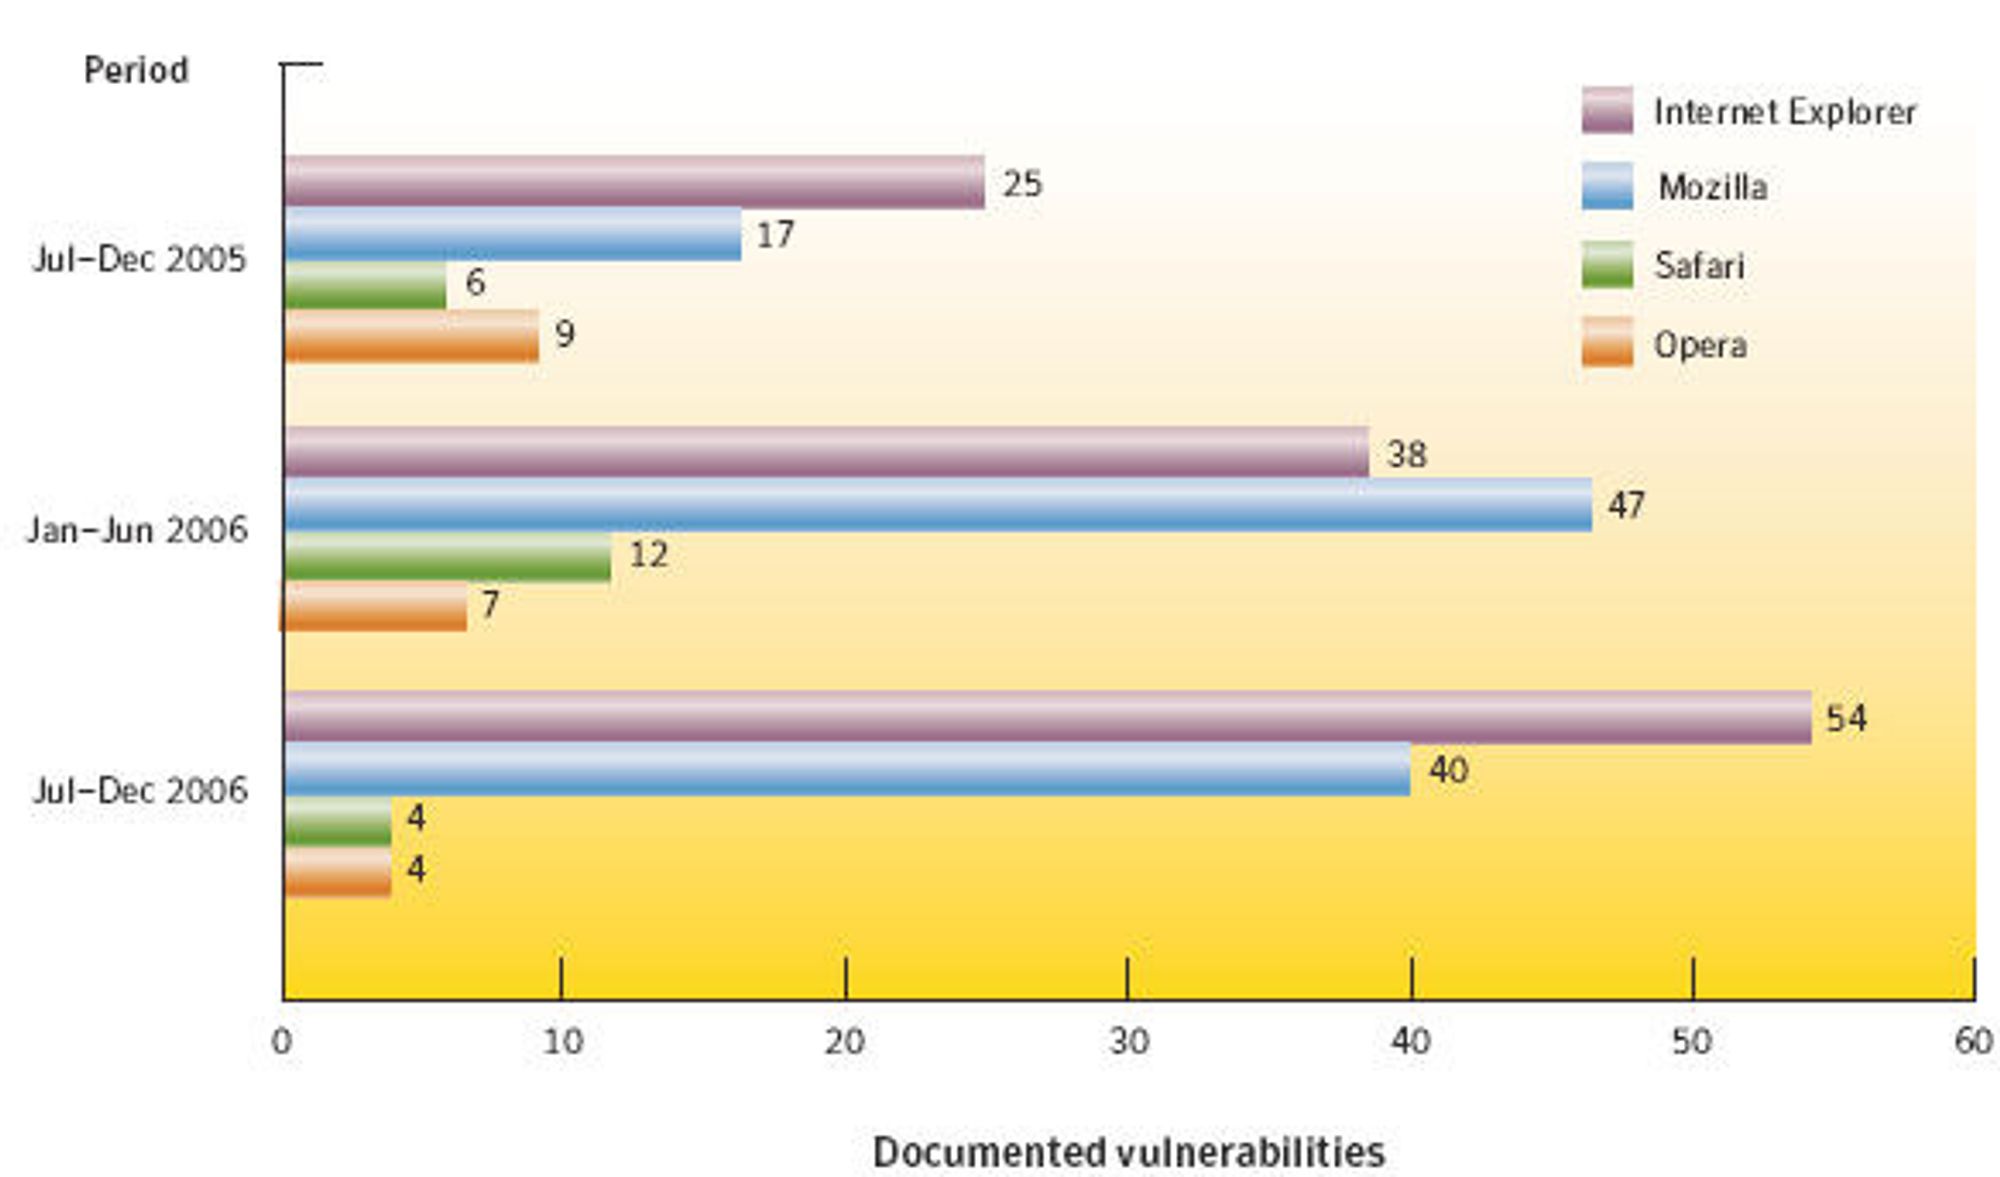 Internet Explorer med flest sårbarheter i 2006